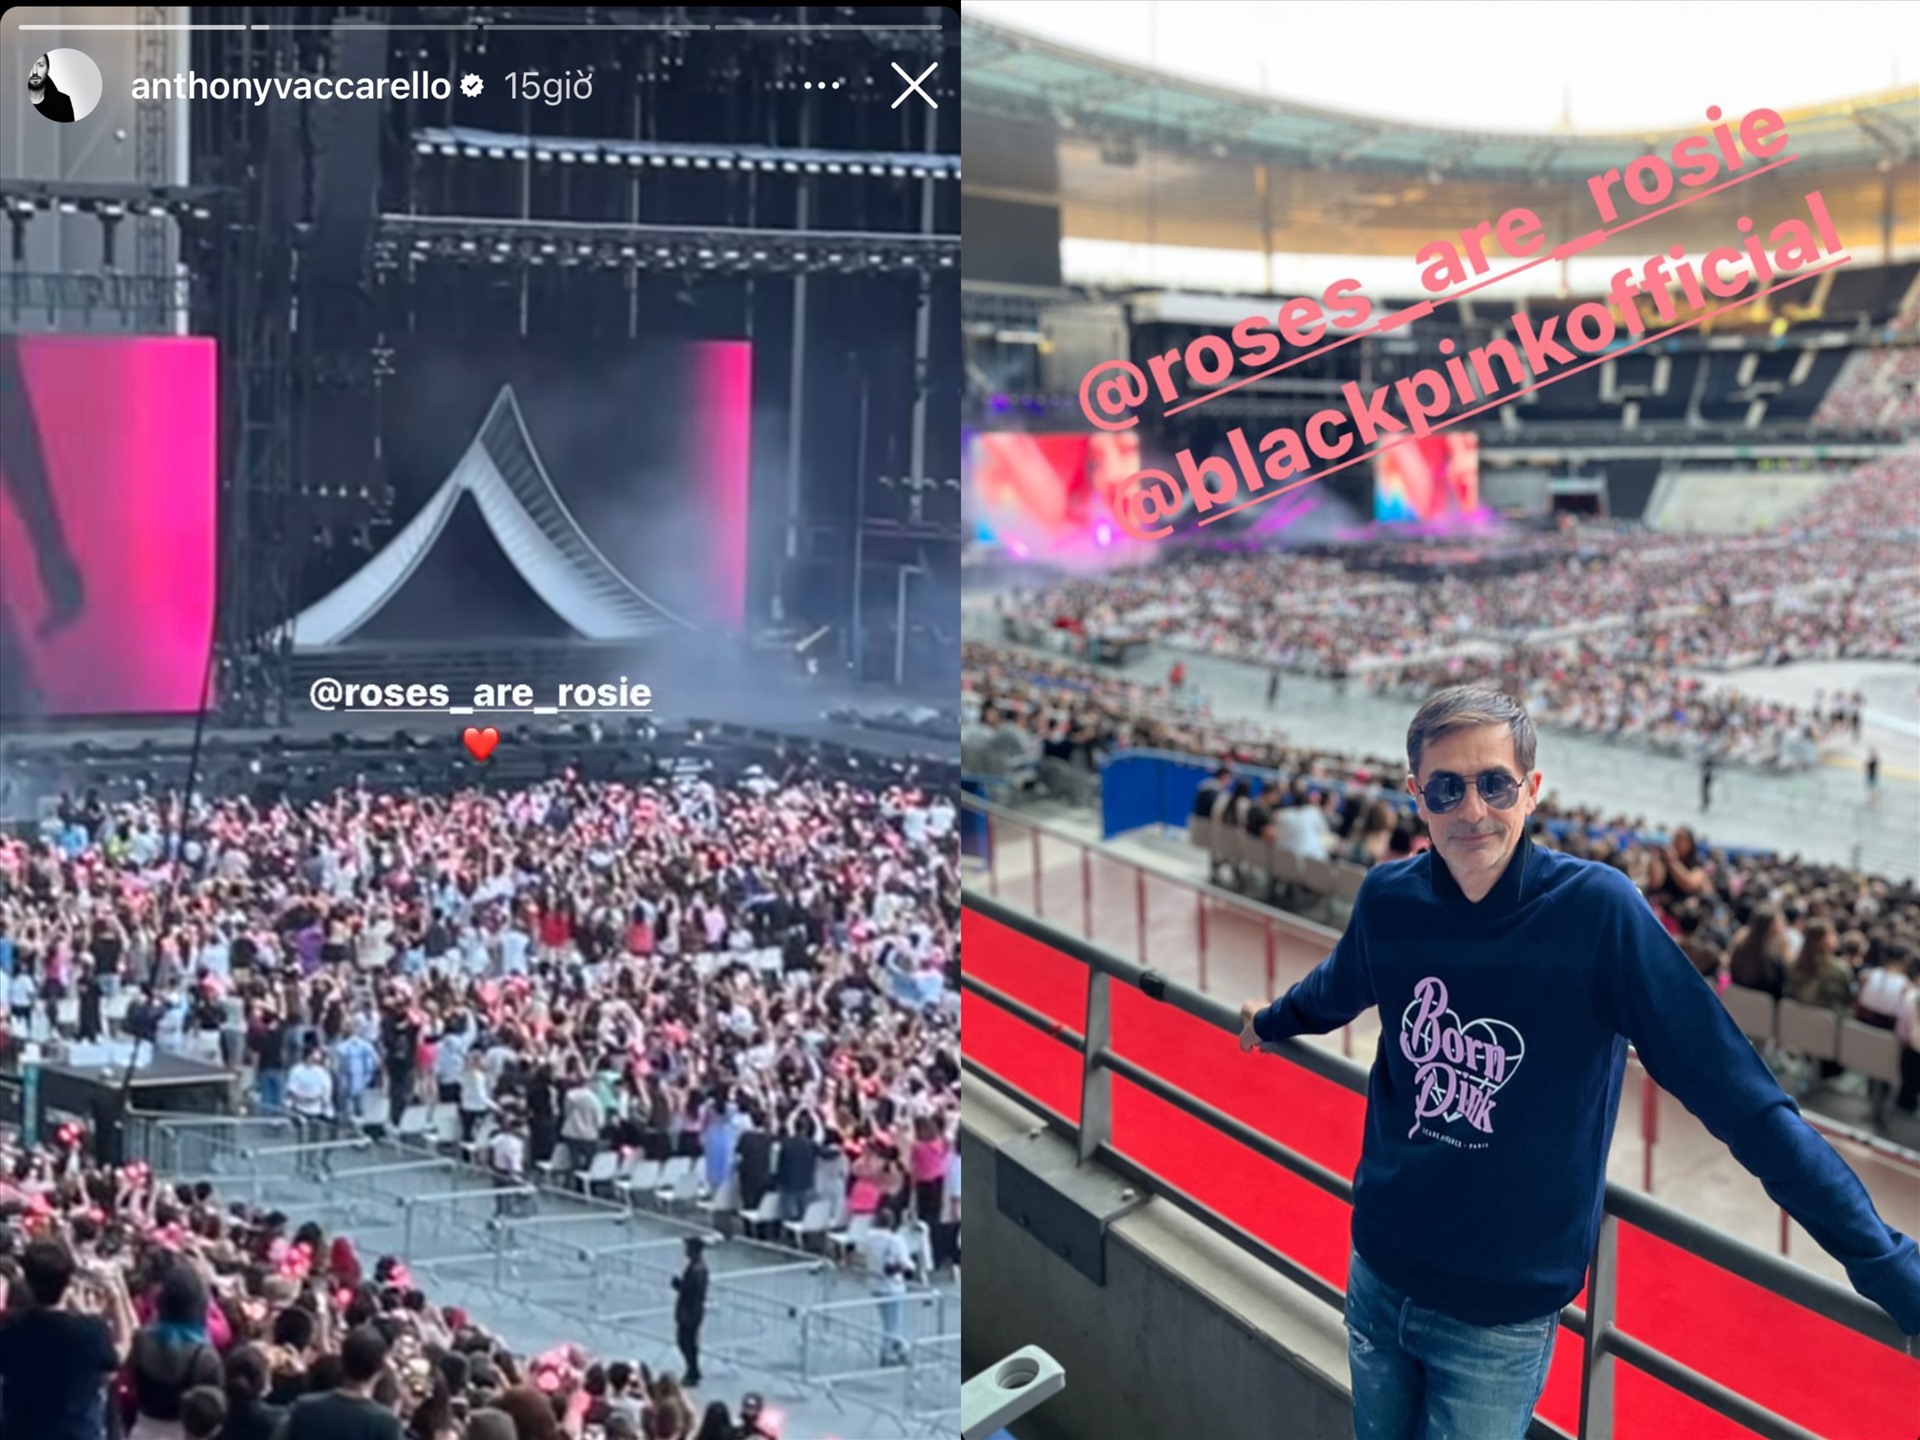 Giám đốc sáng tạo và Giám đốc điều hành thương hiệu Saint Laurent đến concert ủng hộ nàng đại sứ Rosé. Ảnh: Instagram